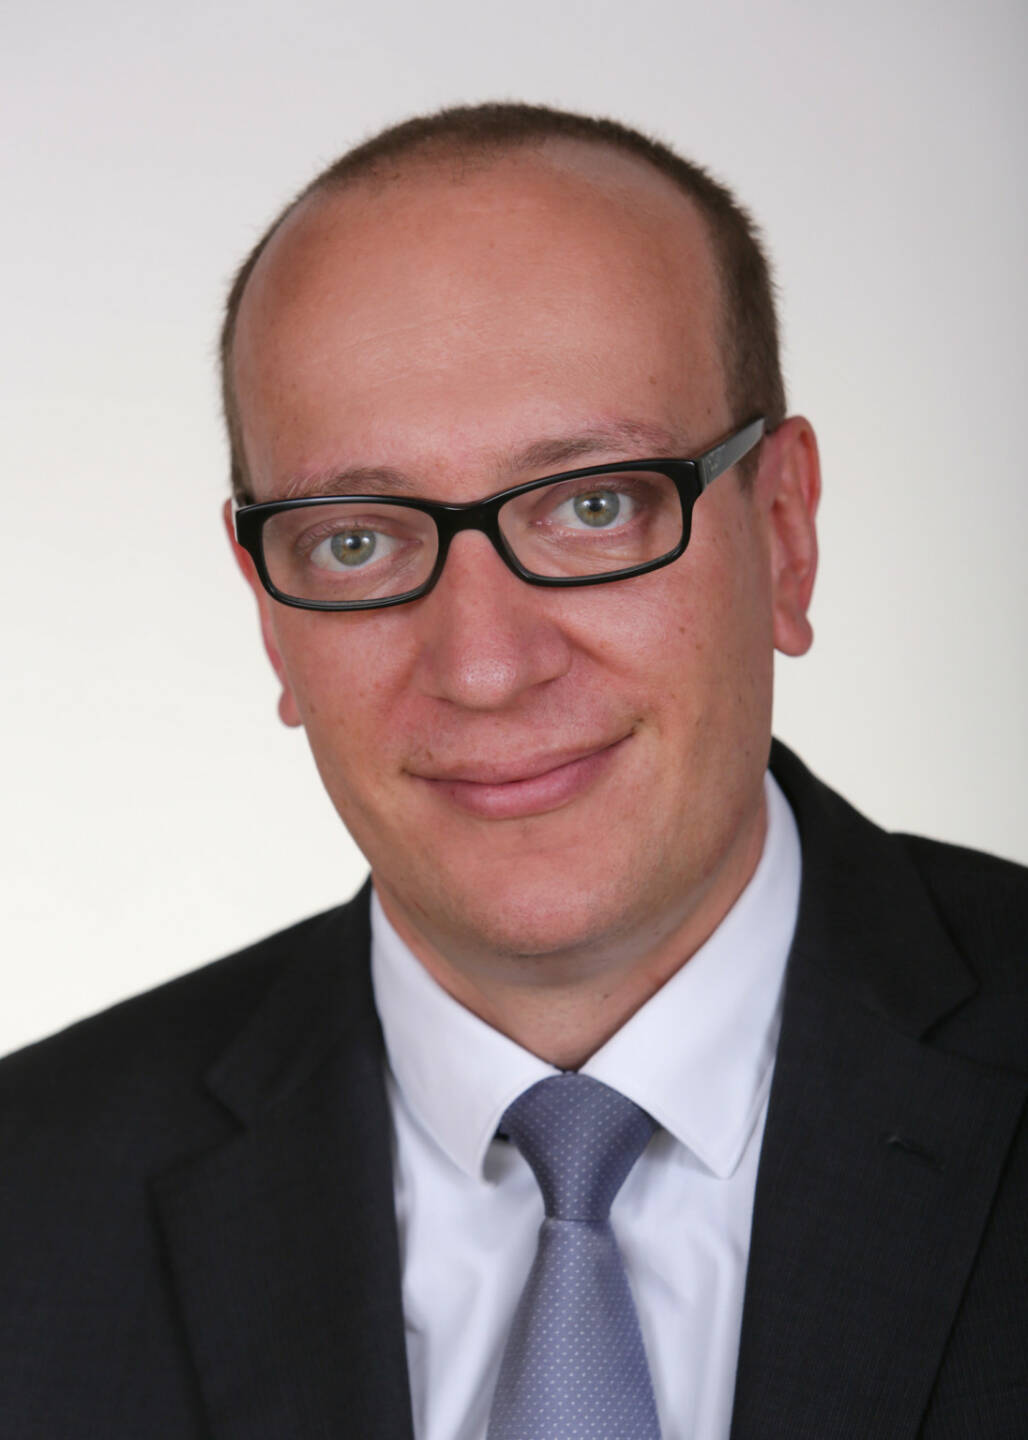 Harald Kröger wird CEO der Raiffeisen Centrobank AG, Credit: Raiffeisen